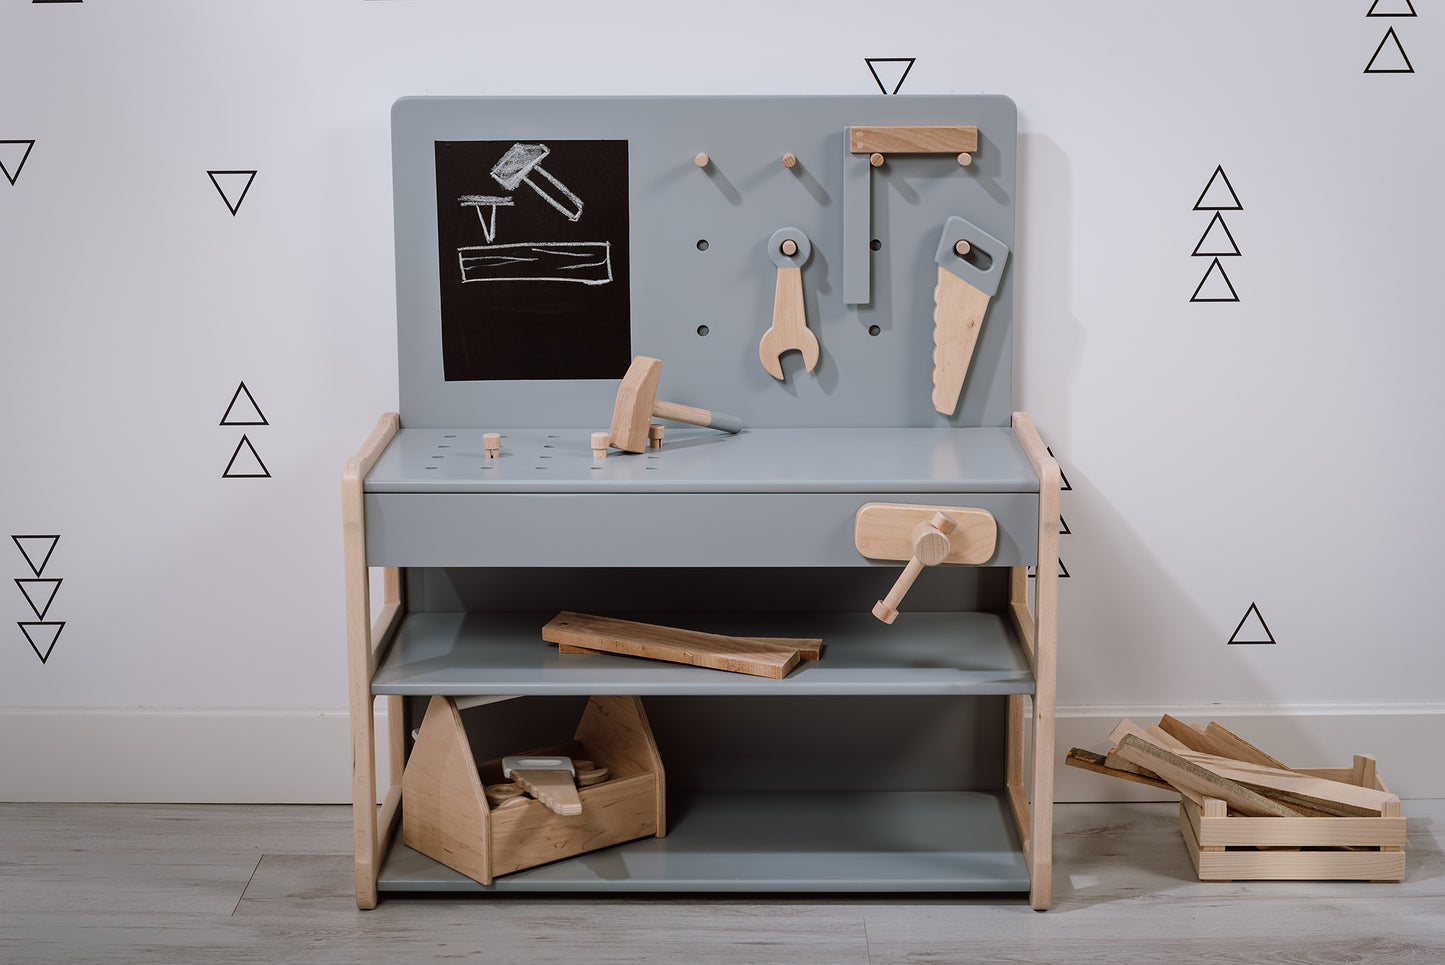 Wooden children's workbench